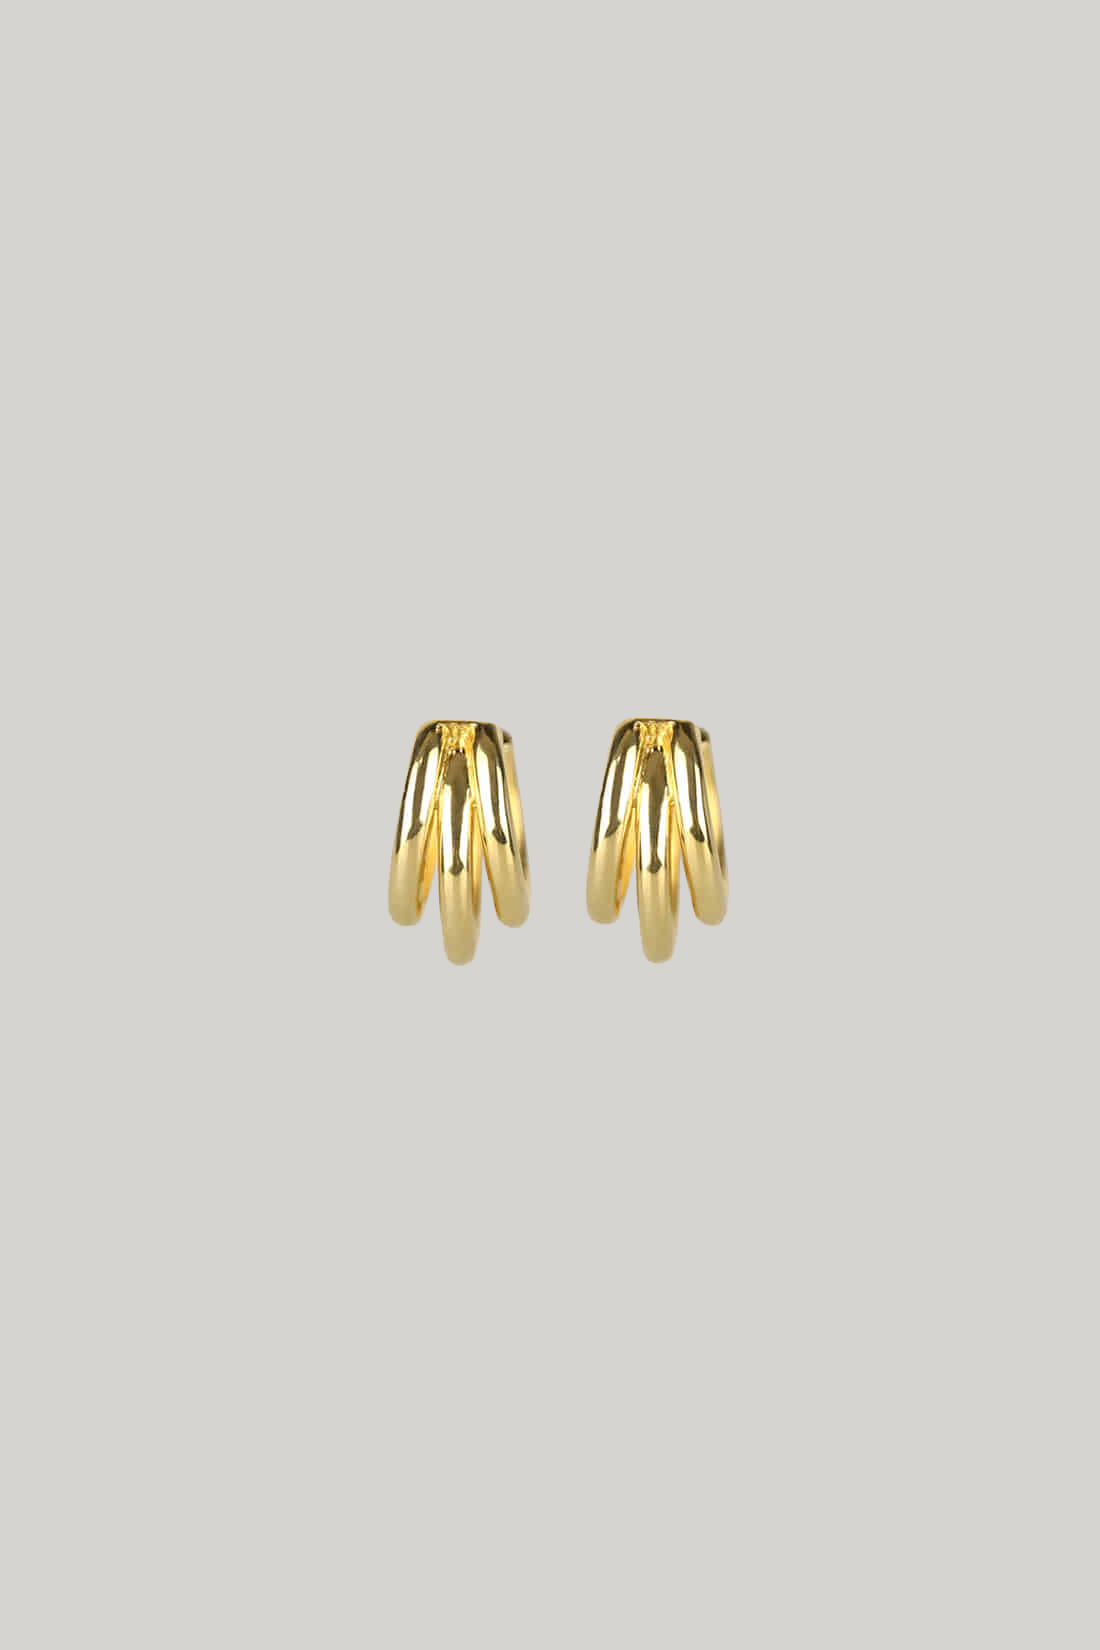 Gala Triple Hoop Earrings  (Gold)